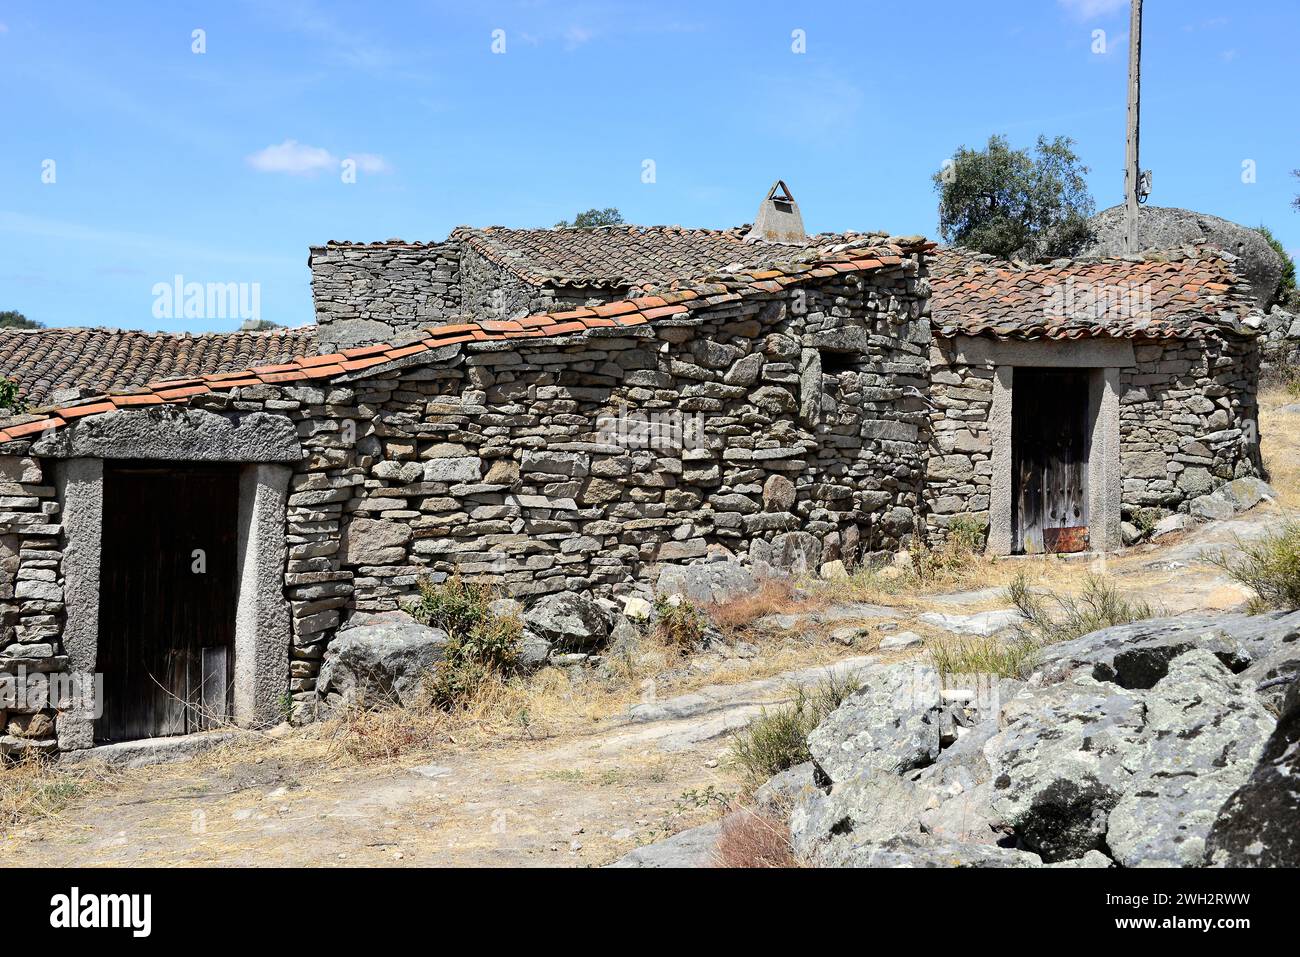 Fornillos de Fermoselle, Villar del Buey municipality. Traditional architecture. Zamora province, Castilla y Leon, Spain. Stock Photo